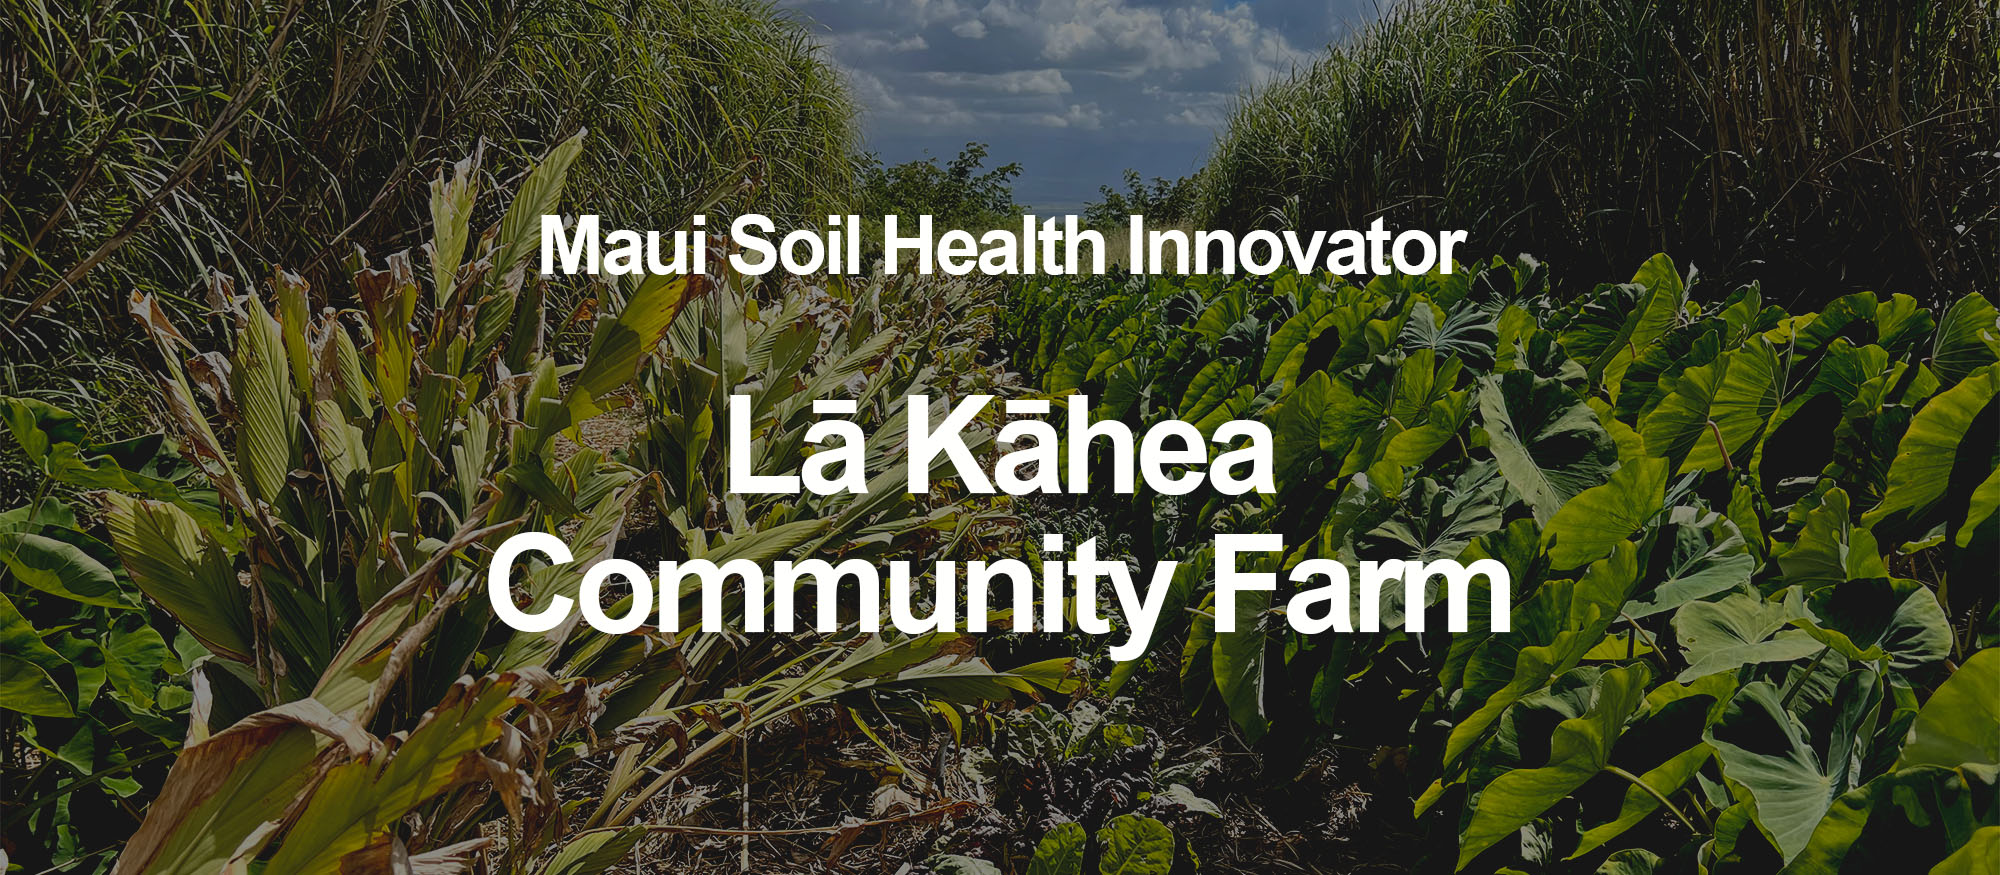 Soil Health Innovator Cover 1